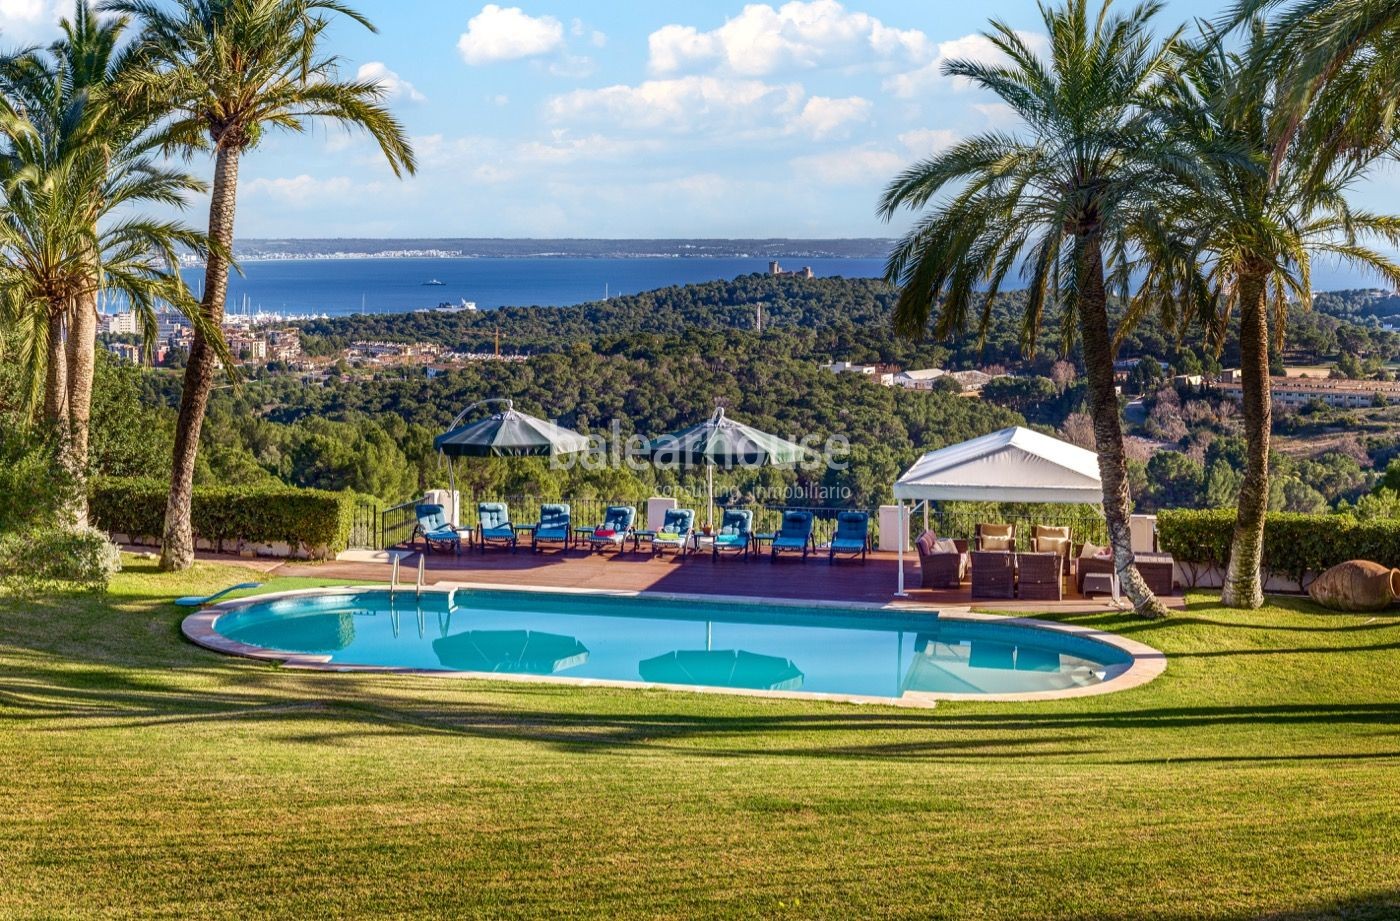 Espectacular propiedad en Son Vida, con privacidad absoluta y las mejores vistas a la bahía de Palma